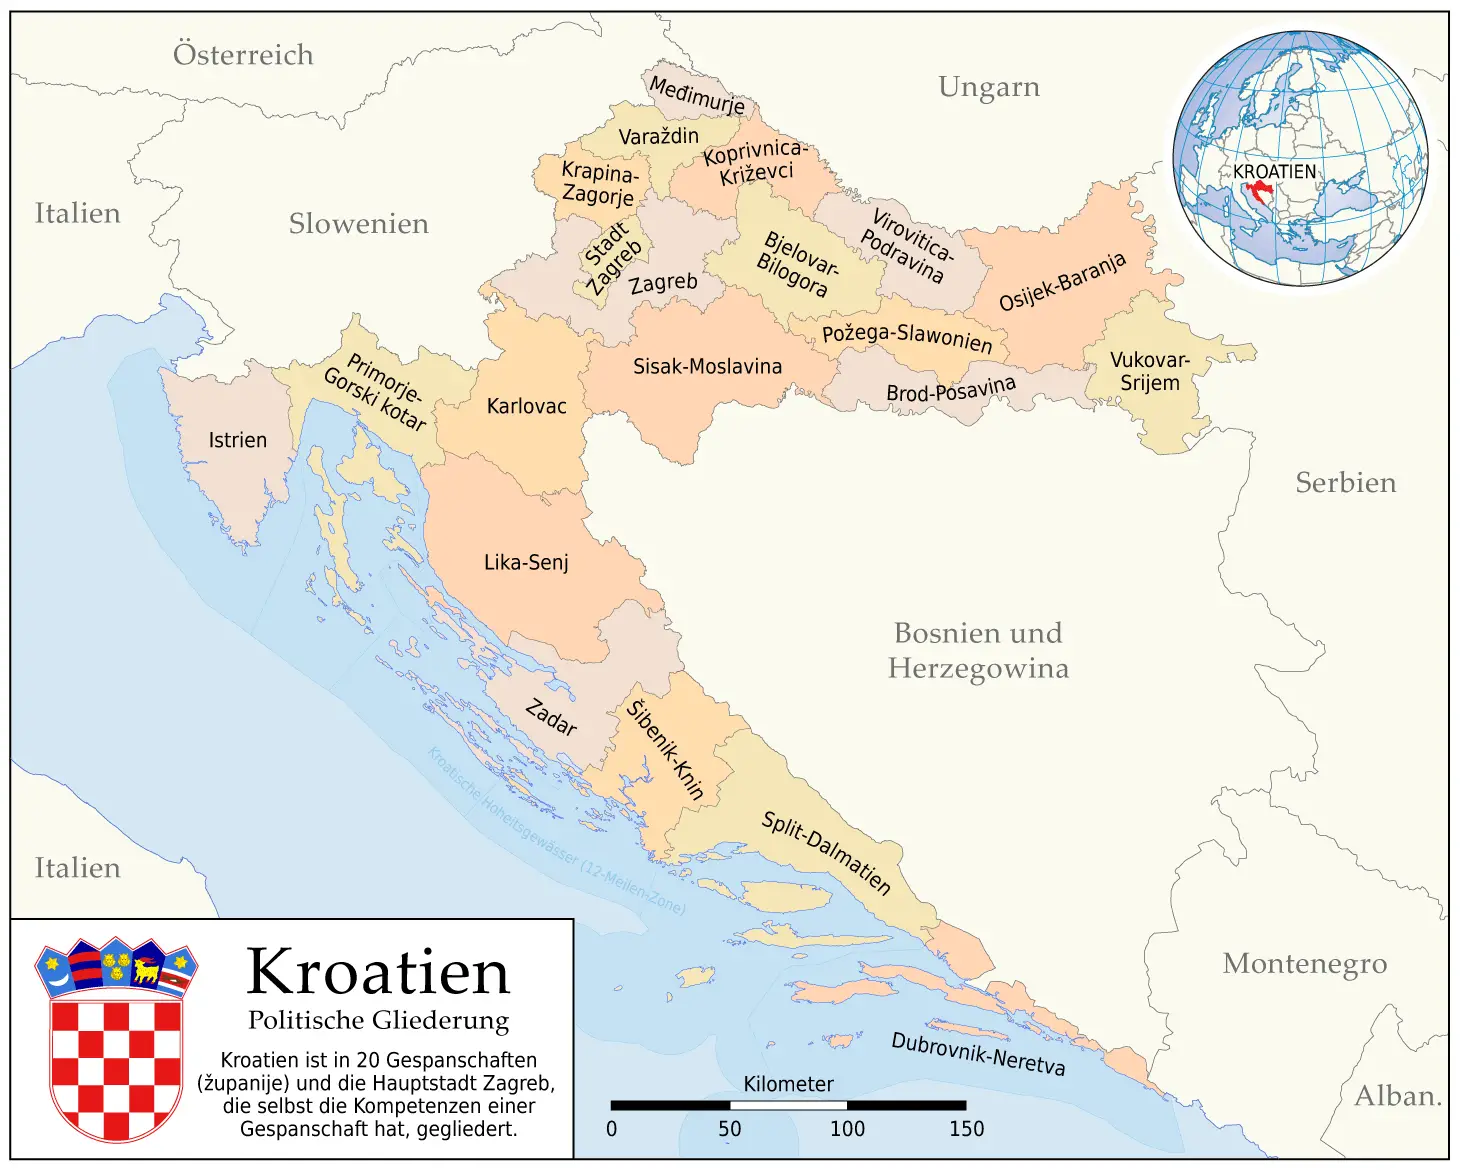 Kroatien  Politische Gliederung (karte)